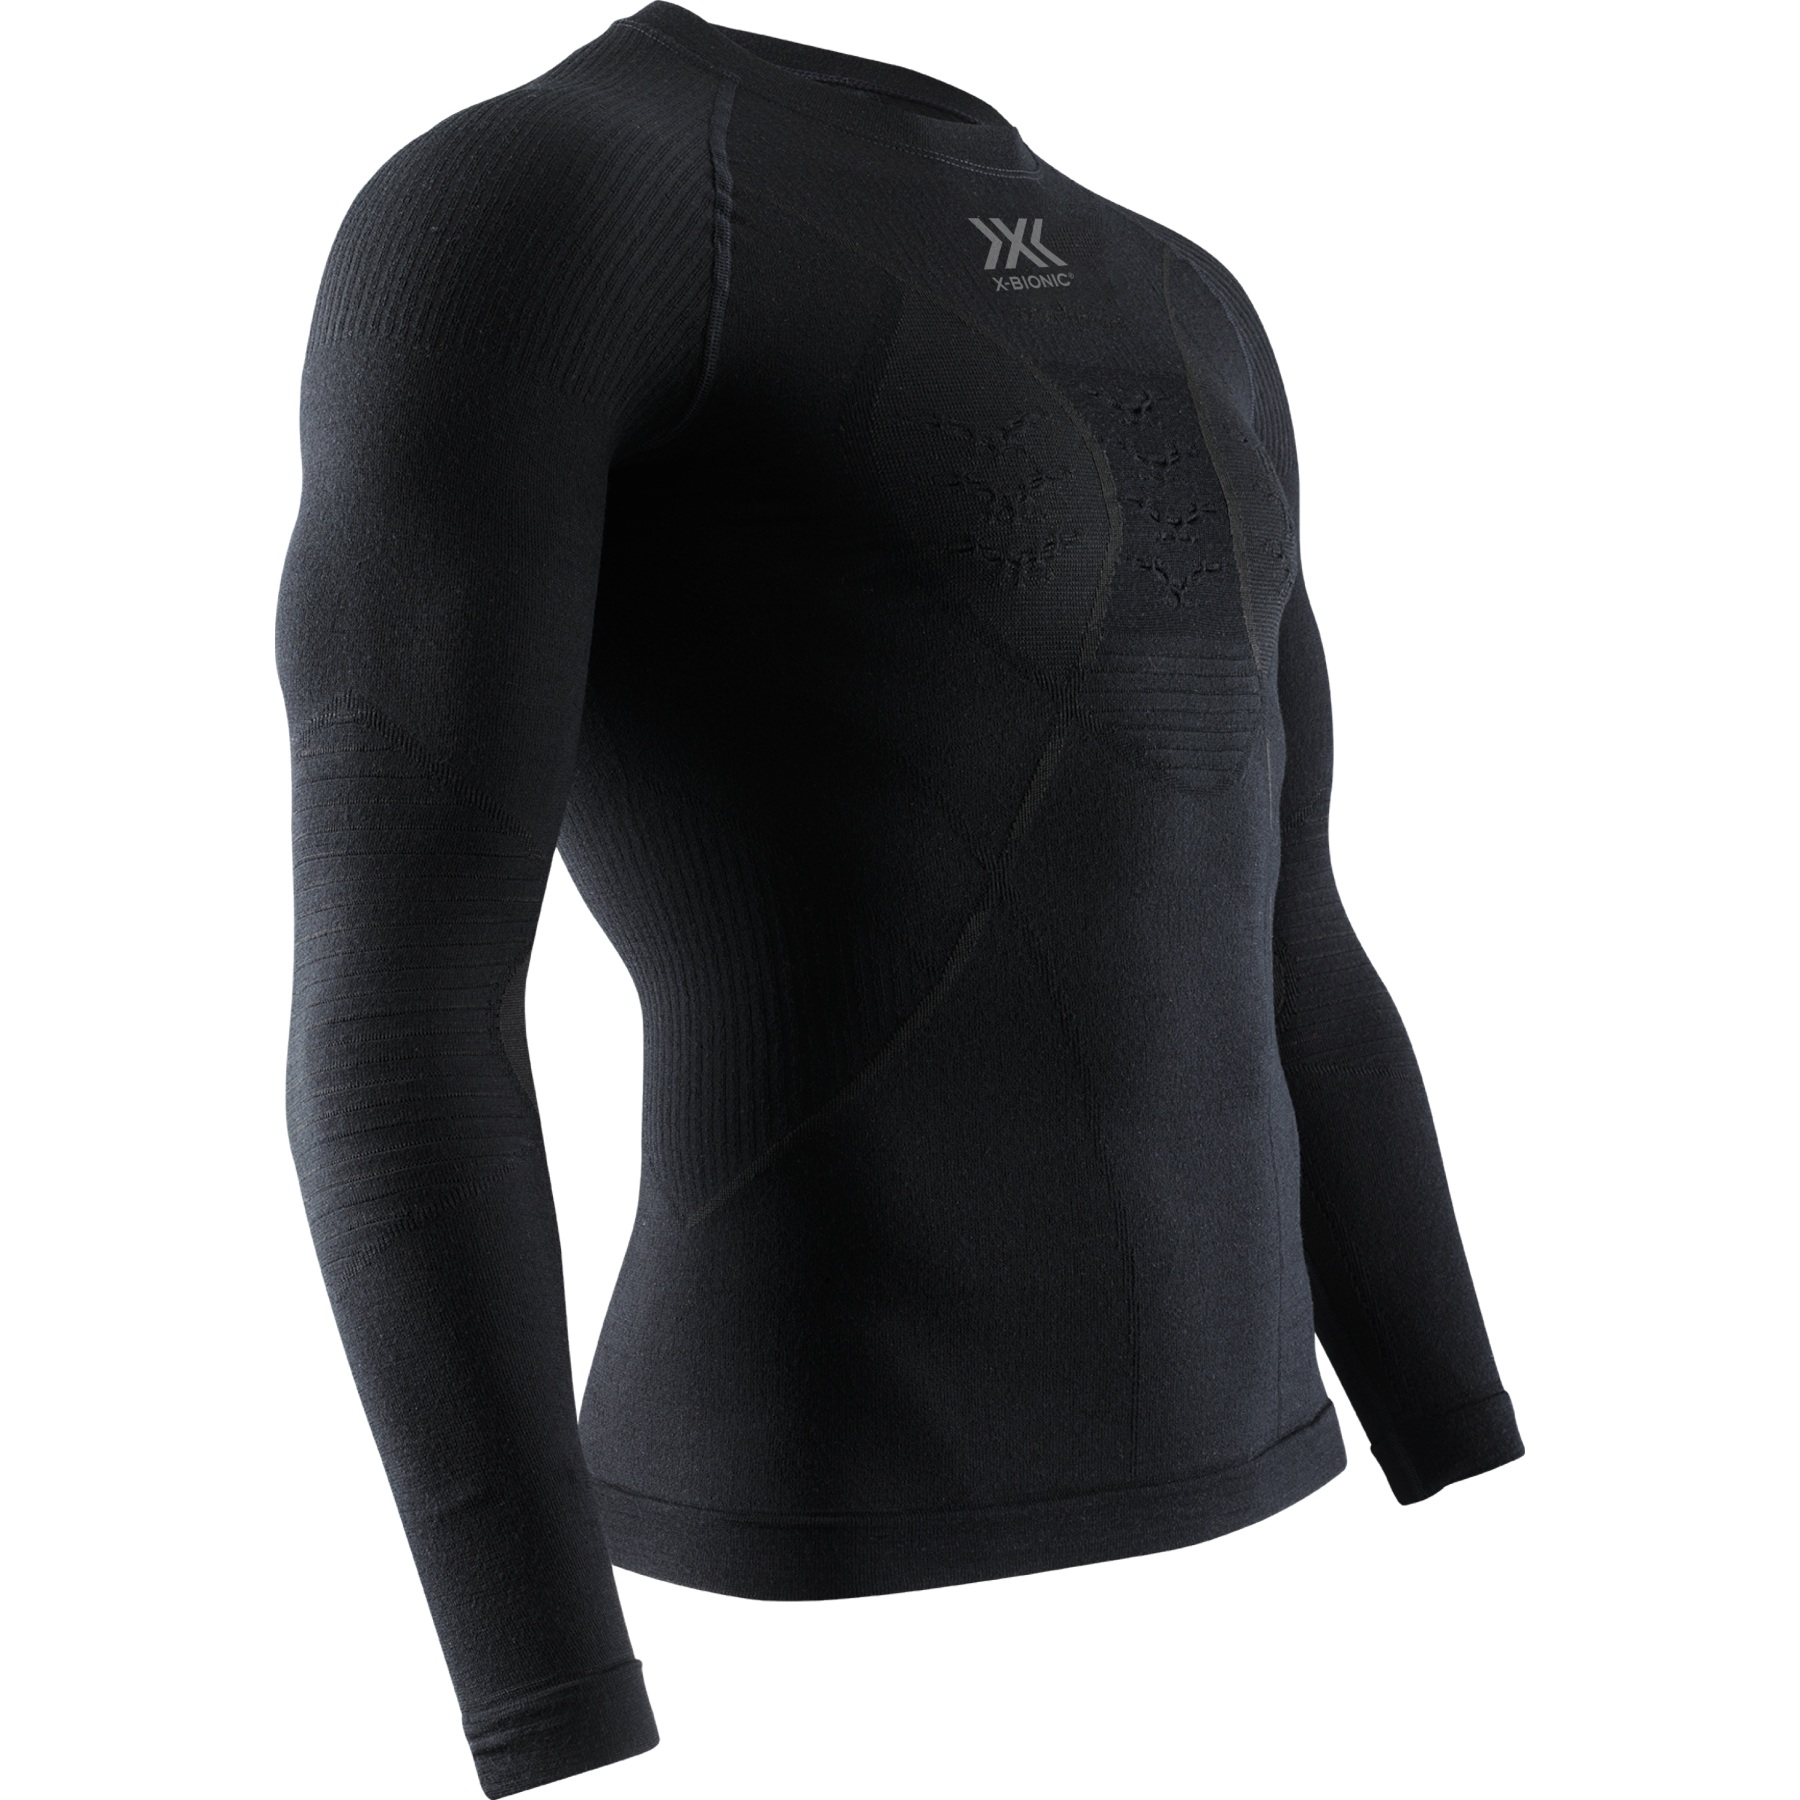 Produktbild von X-Bionic Merino Langarmunterhemd Herren - schwarz/schwarz